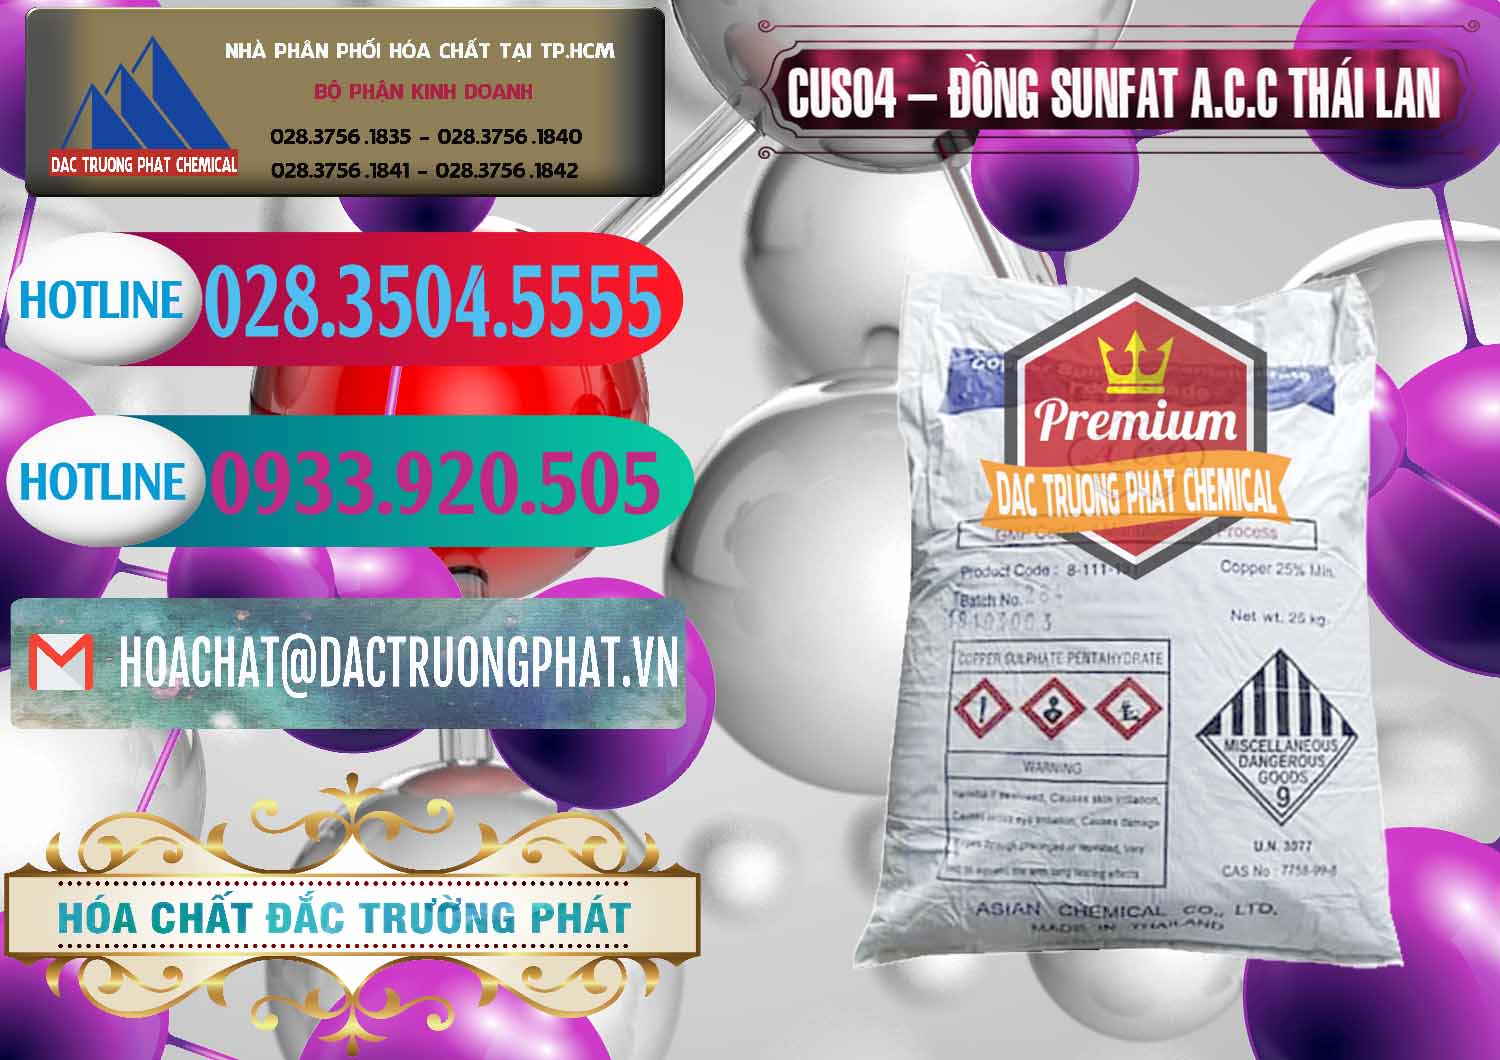 Chuyên kinh doanh ( bán ) CuSO4 – Đồng Sunfat A.C.C Thái Lan - 0249 - Công ty cung cấp và phân phối hóa chất tại TP.HCM - truongphat.vn